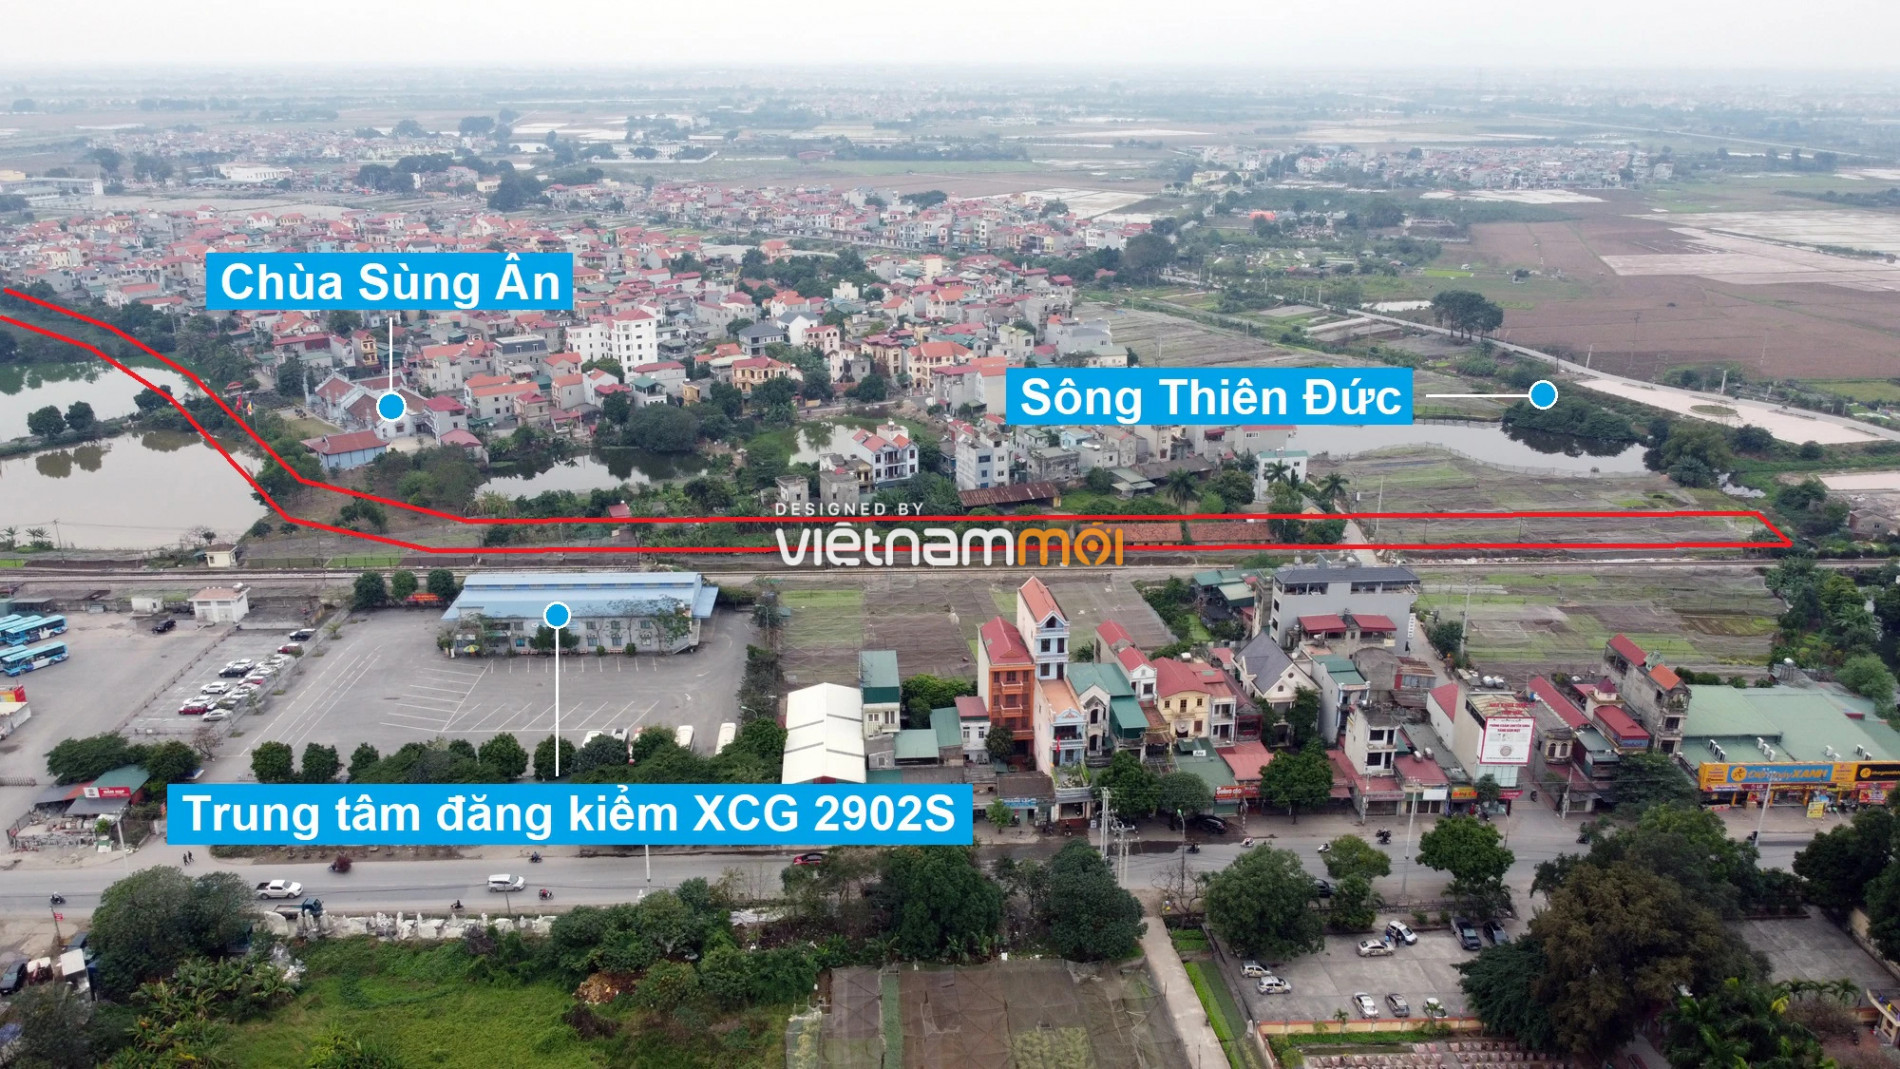 Những khu đất sắp thu hồi để mở đường ở huyện Gia Lâm, Hà Nội (phần 2) - Ảnh 7.